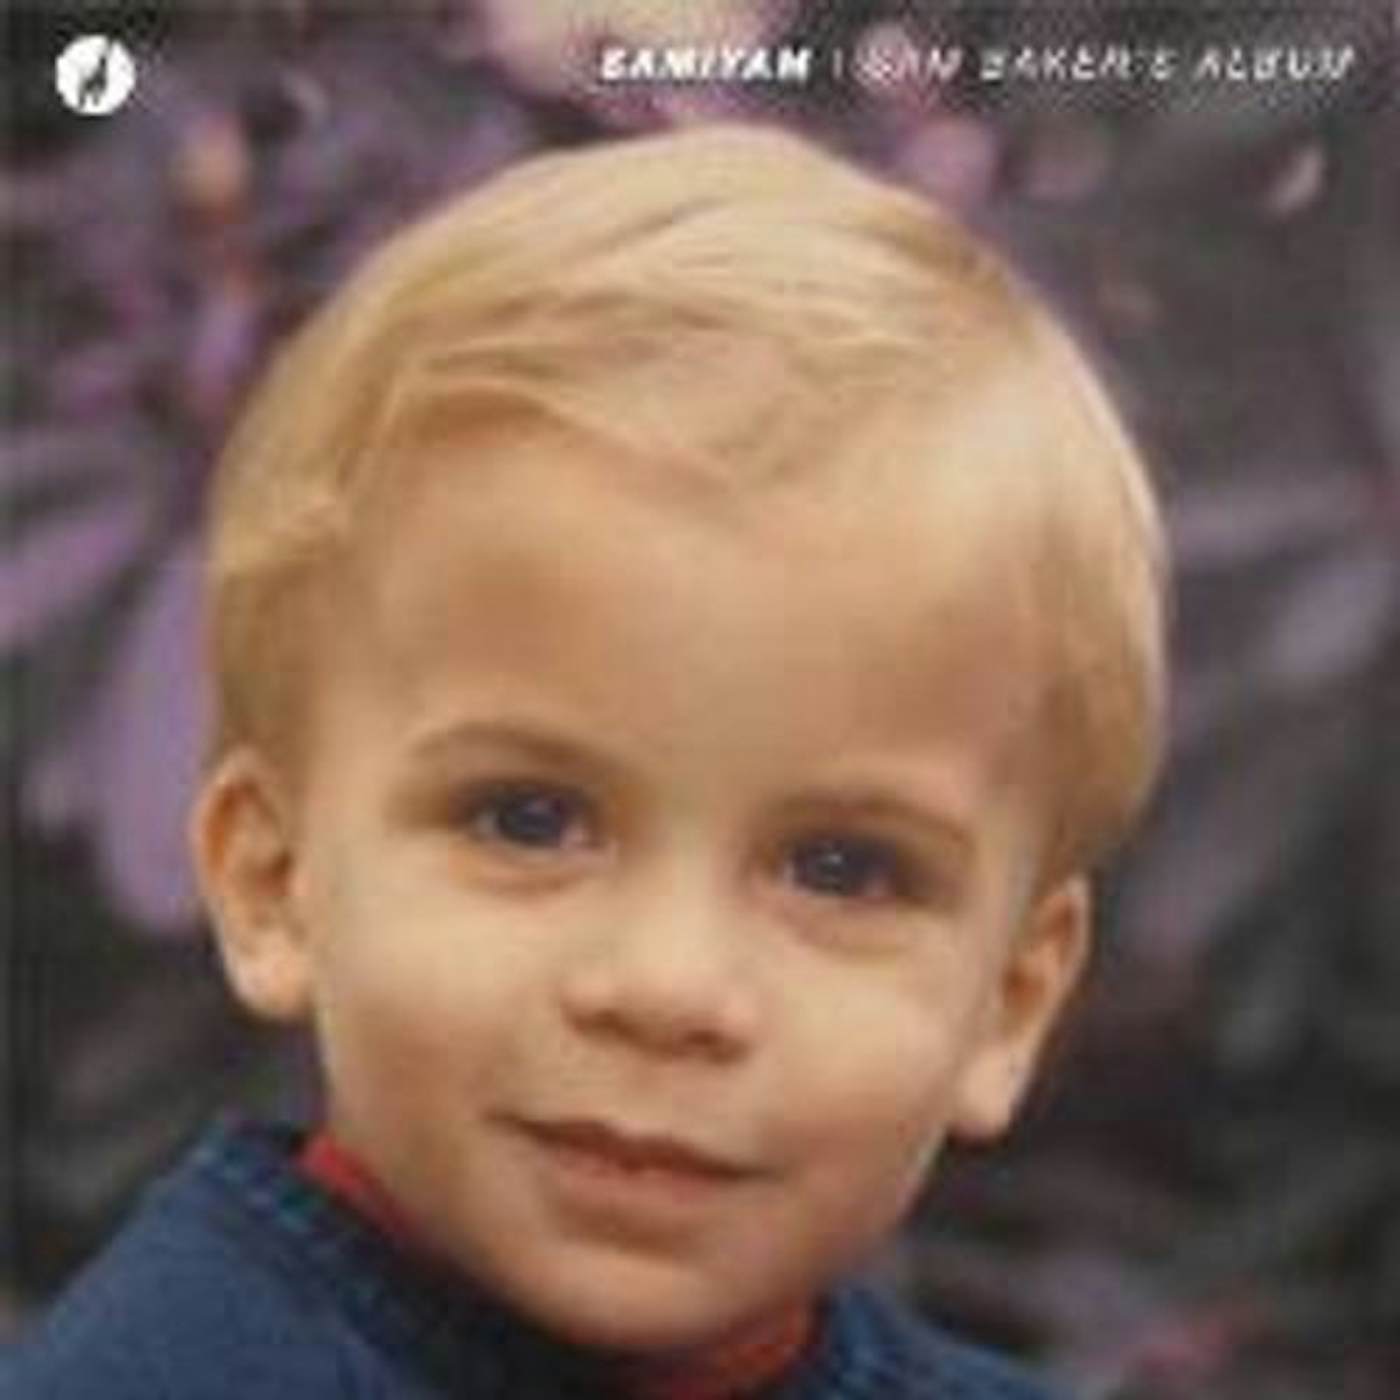 Samiyam Sam Baker's Album Vinyl Record